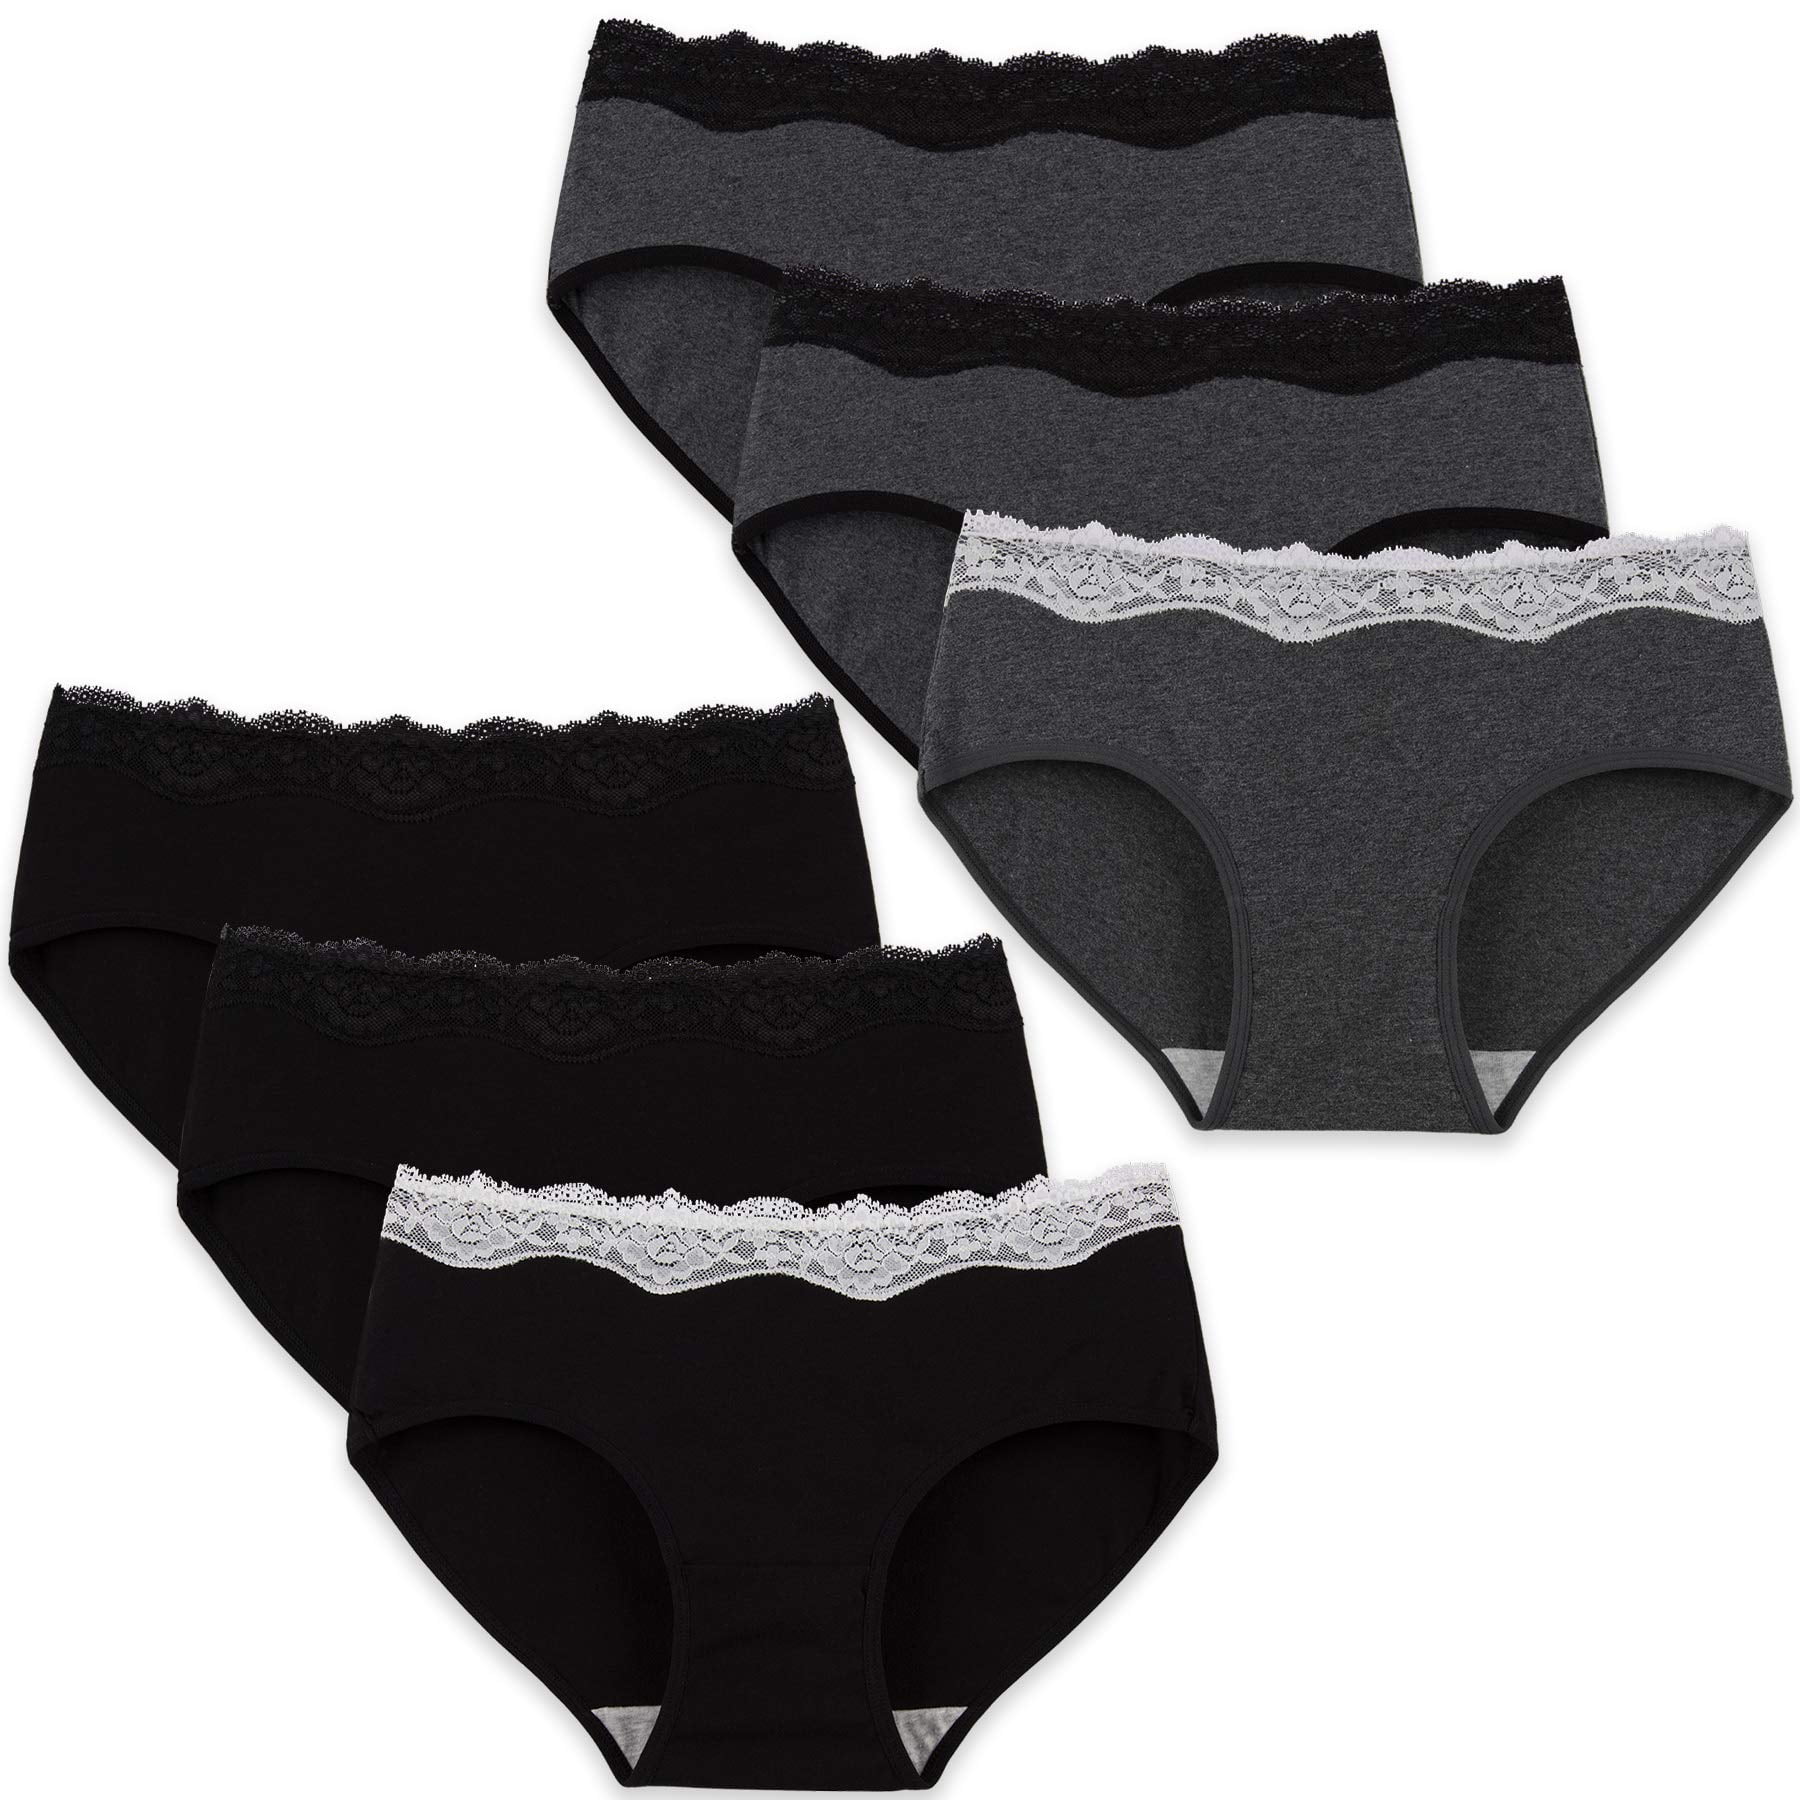 vbnergoie Women Thong Breathable Briefs Lace Hollow Cotton Panties Long Boy  Shorts Underwear for Women Cotton French Cut Underwear for Women Underwear